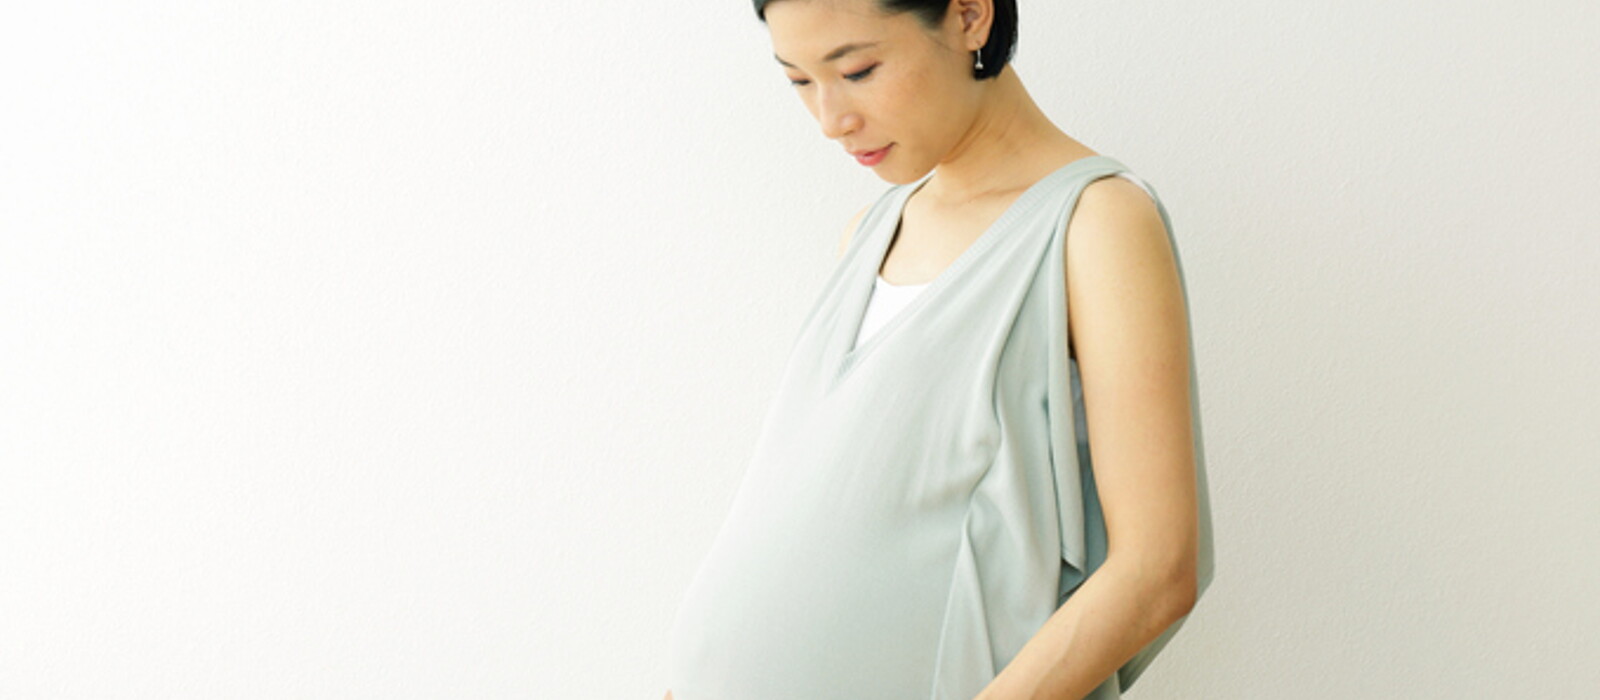 คุณแม่ท้อง 4 เดือน ลูกดิ้นหรือยัง อายุครรภ์ 4 เดือน ลูกอยู่ตรงไหน